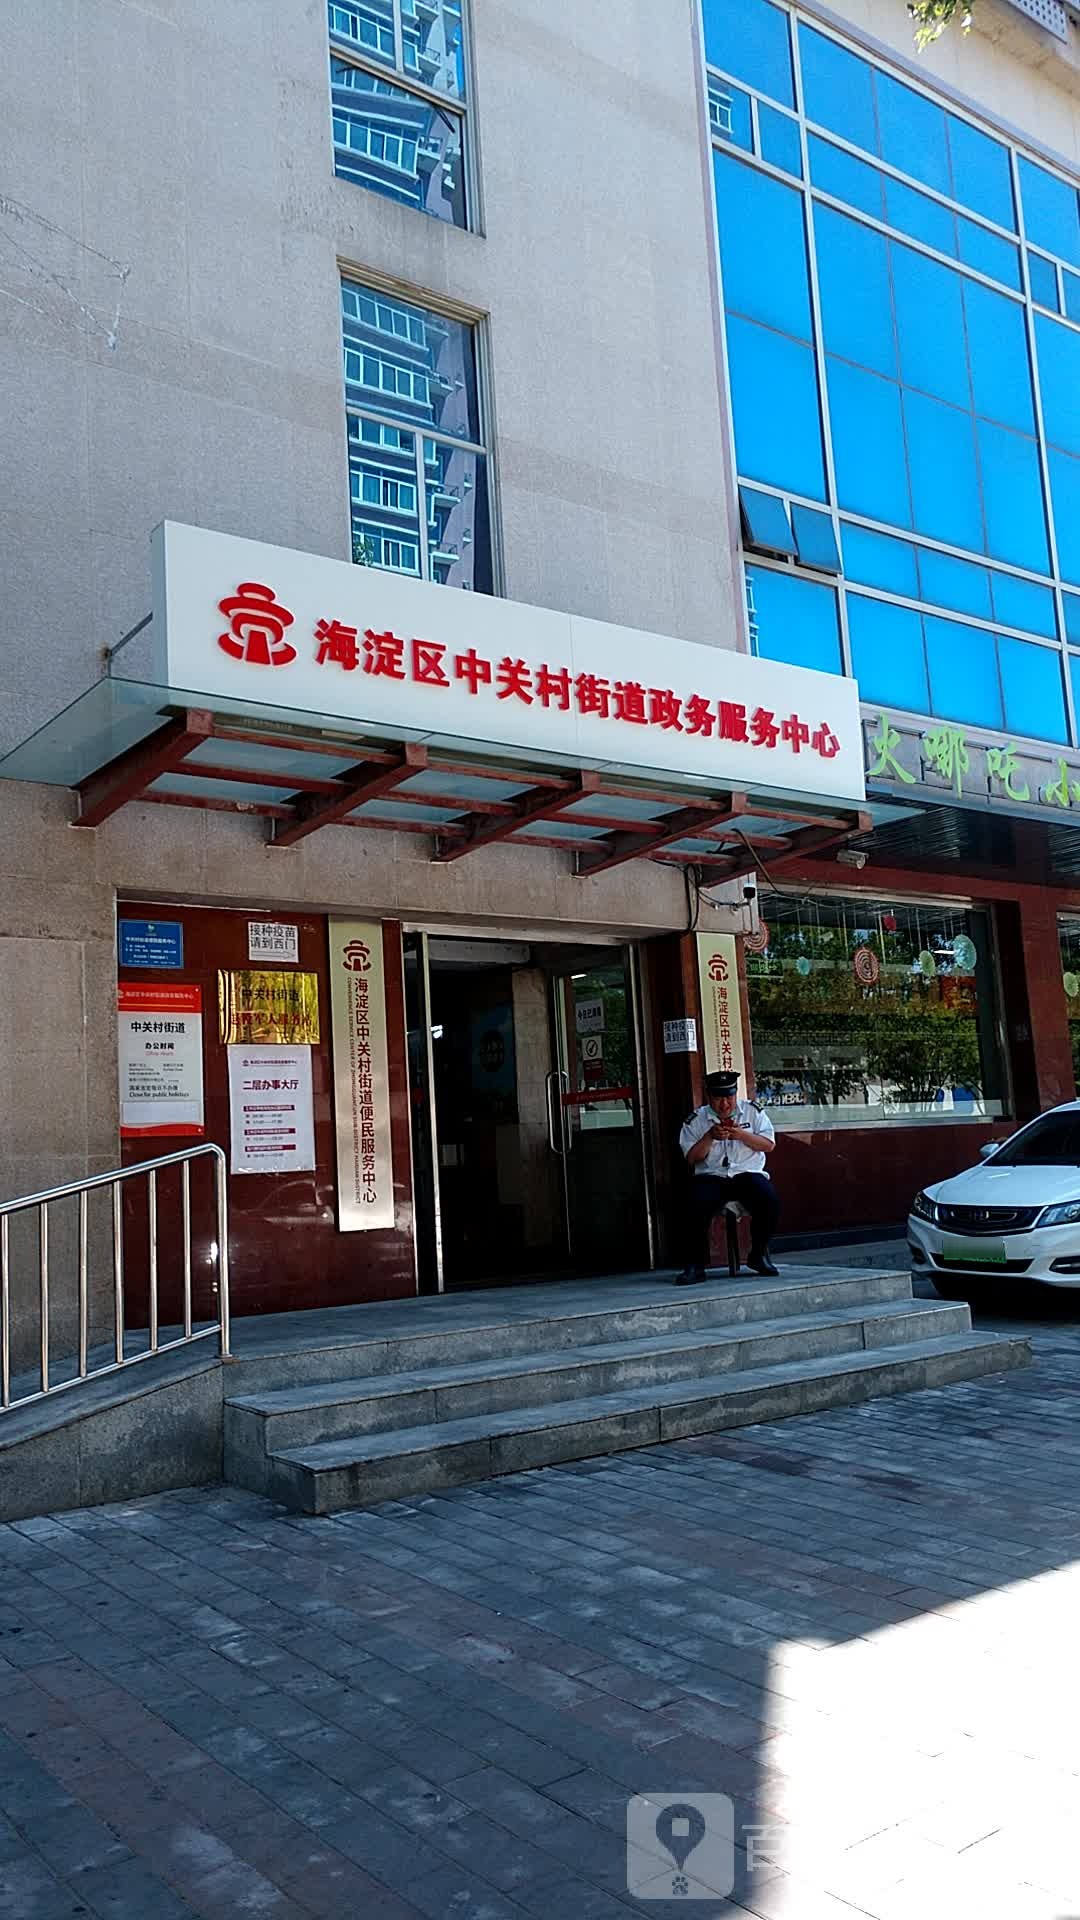 包含北京市海淀妇幼保健院名医荟萃黄牛跑腿号贩子挂号的词条